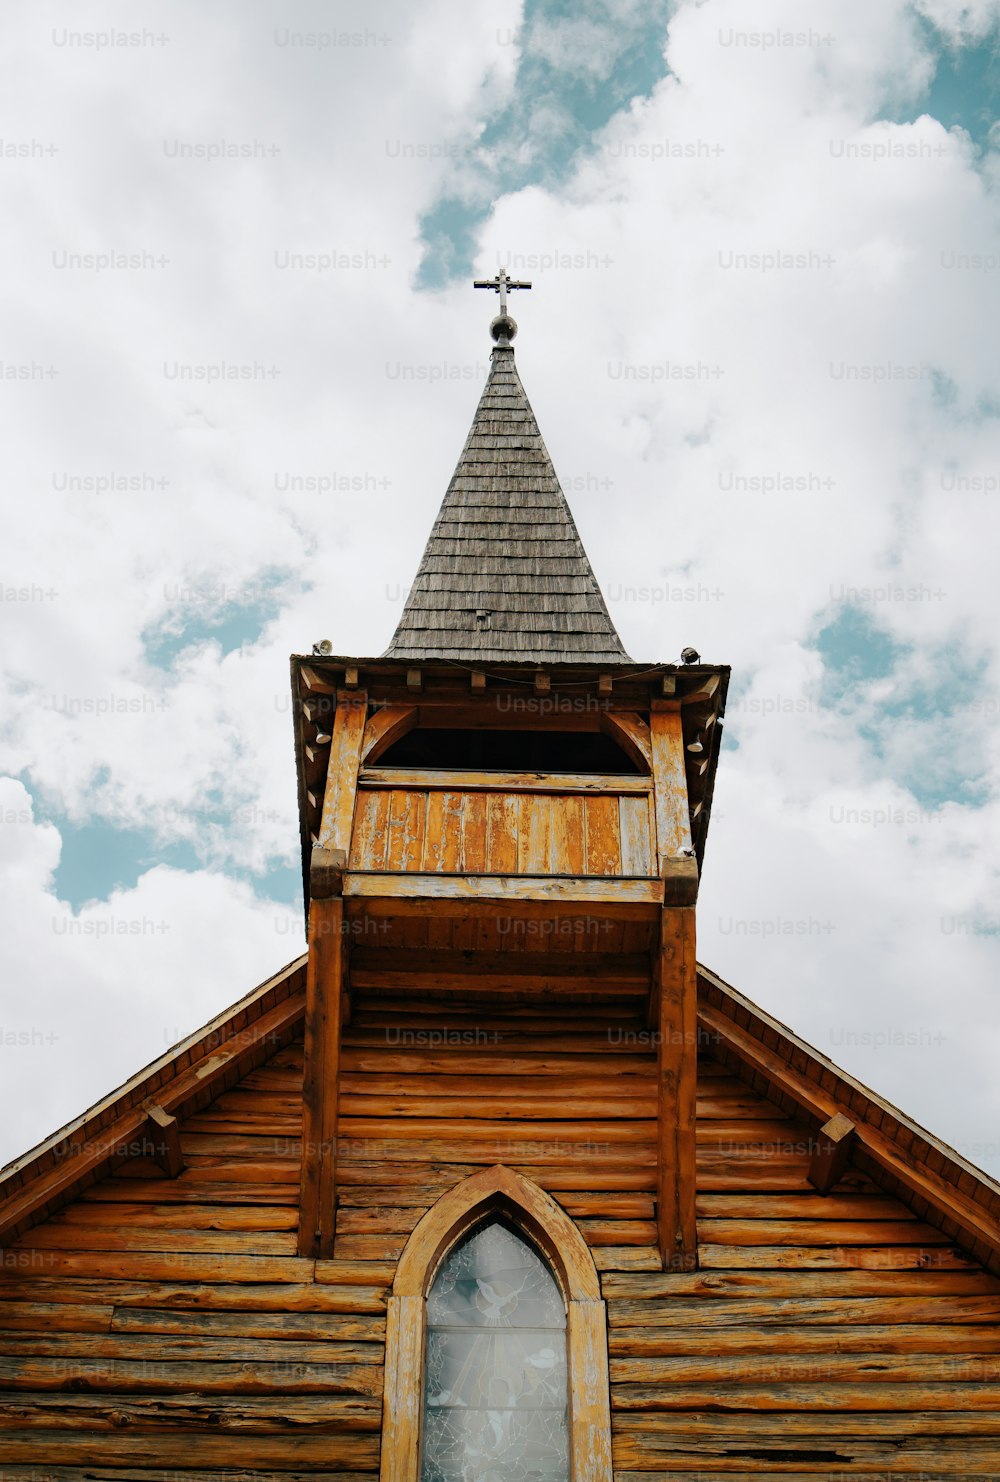 eine Holzkirche mit einem Turm und einem Kreuz auf der Spitze